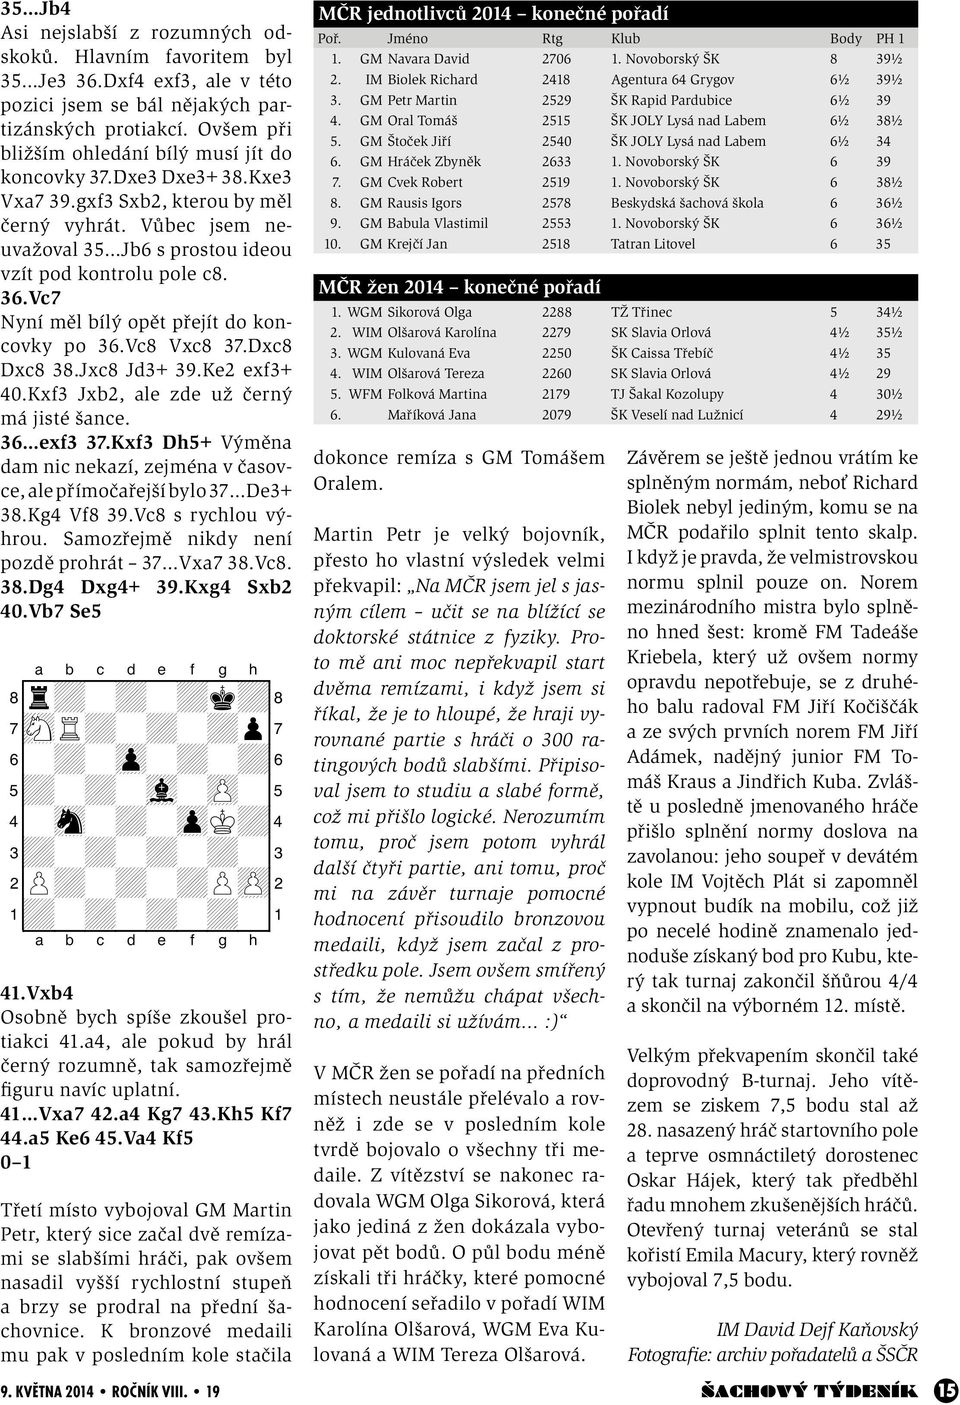 Vc7 Nyní měl bílý opět přejít do koncovky po 36.Vc8 Vxc8 37.Dxc8 Dxc8 38.Jxc8 Jd3+ 39.Ke2 exf3+ 40.Kxf3 Jxb2, ale zde už černý má jisté šance. 36 exf3 37.